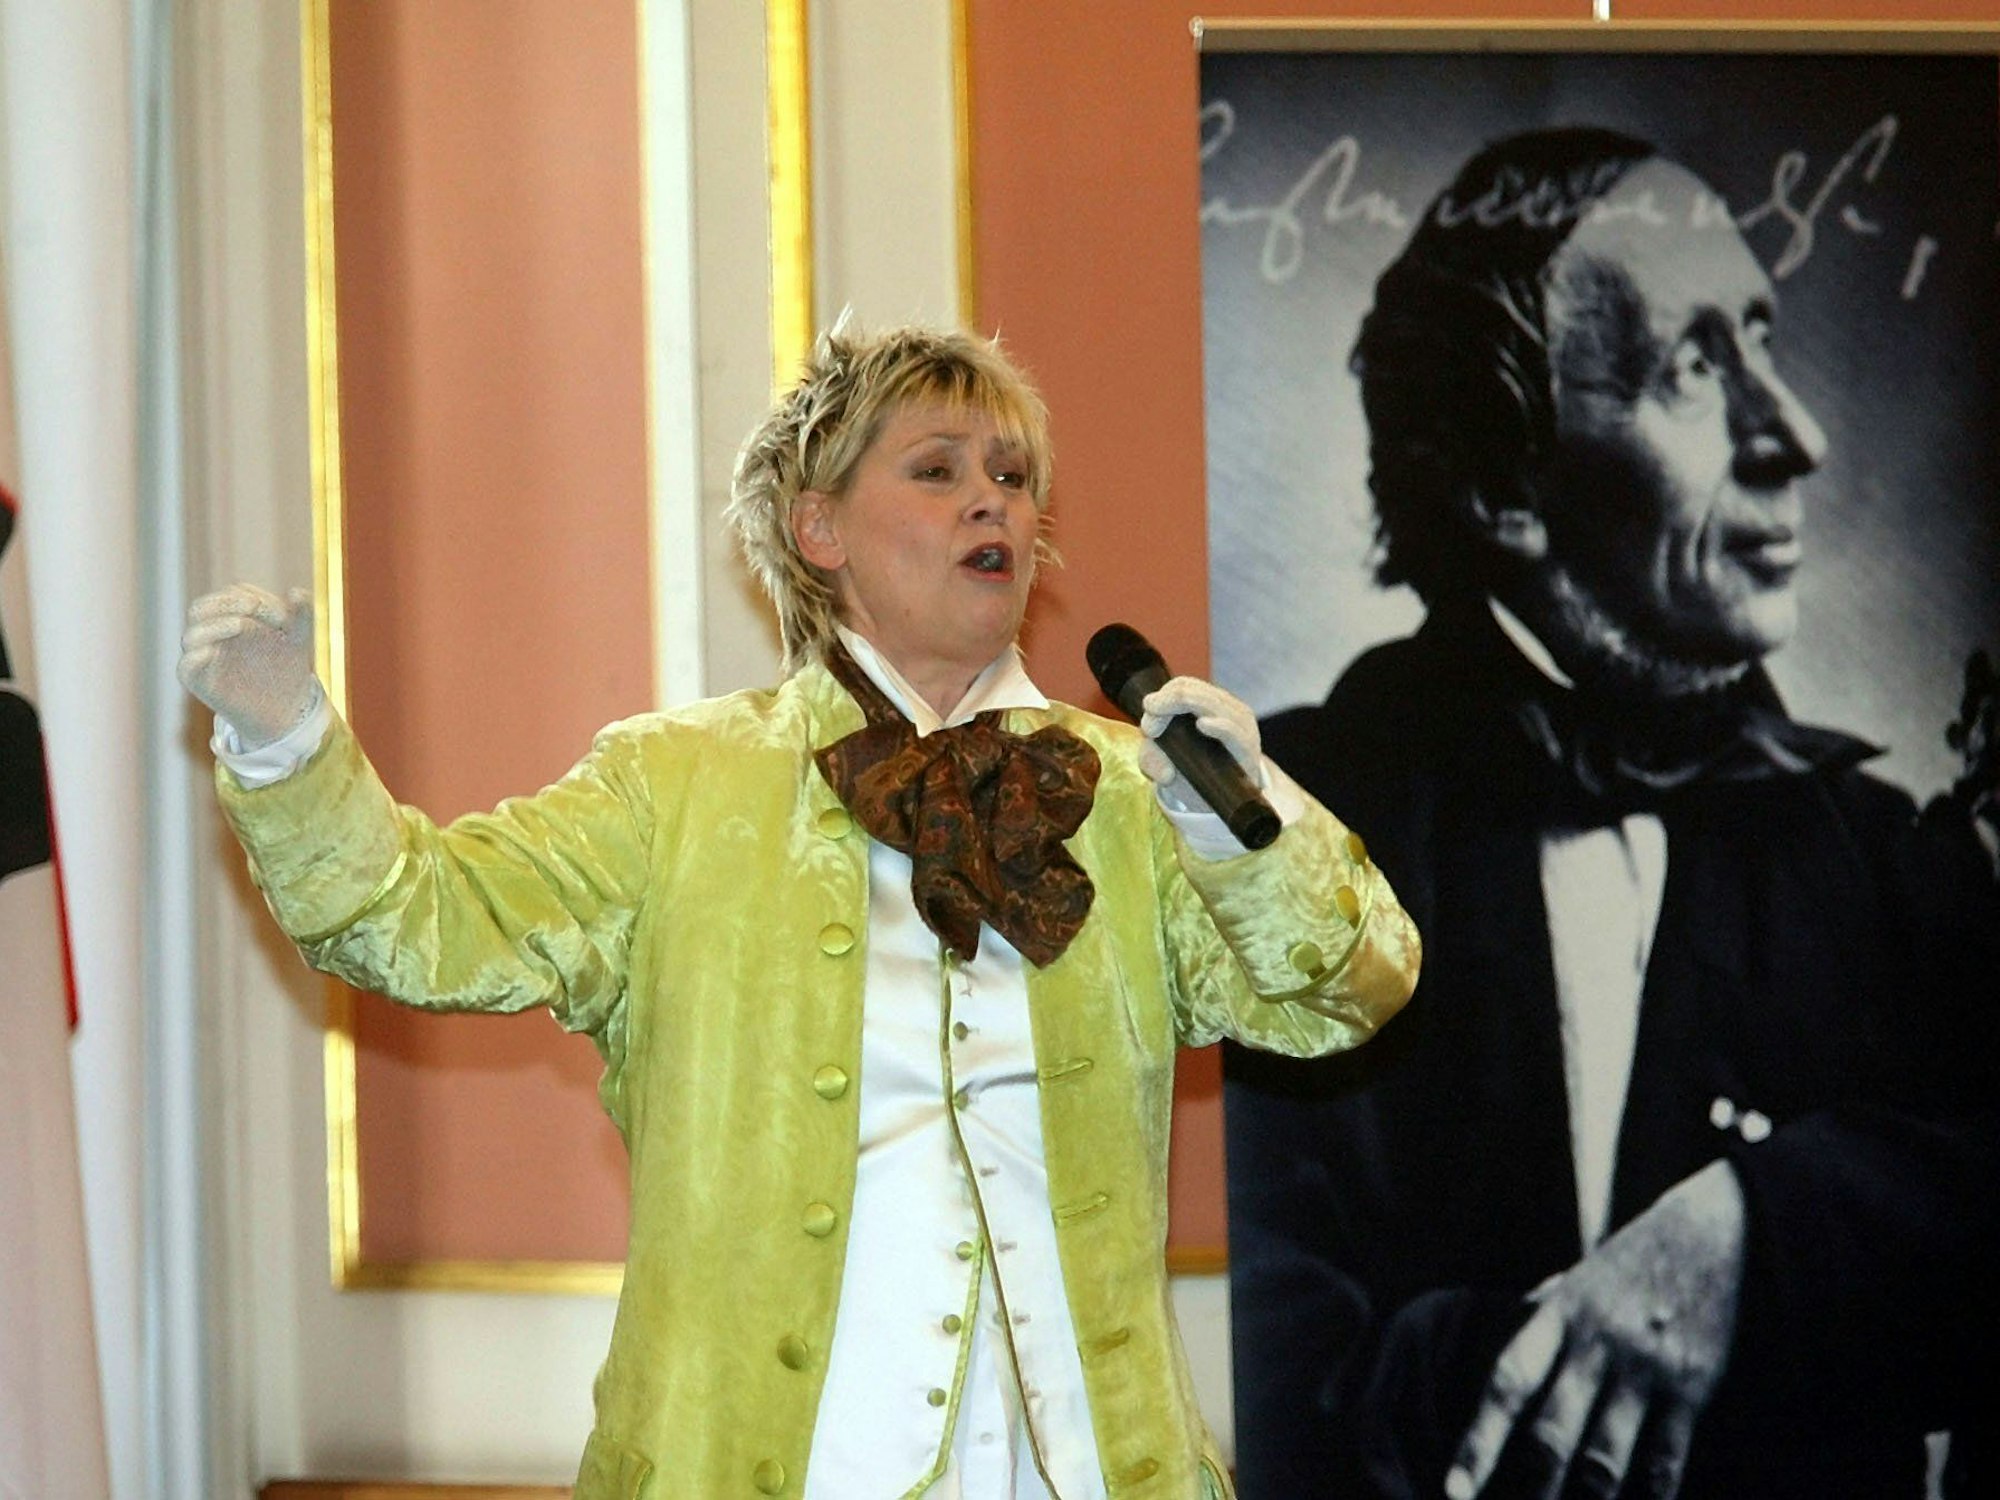 Gitte Haenning performt.